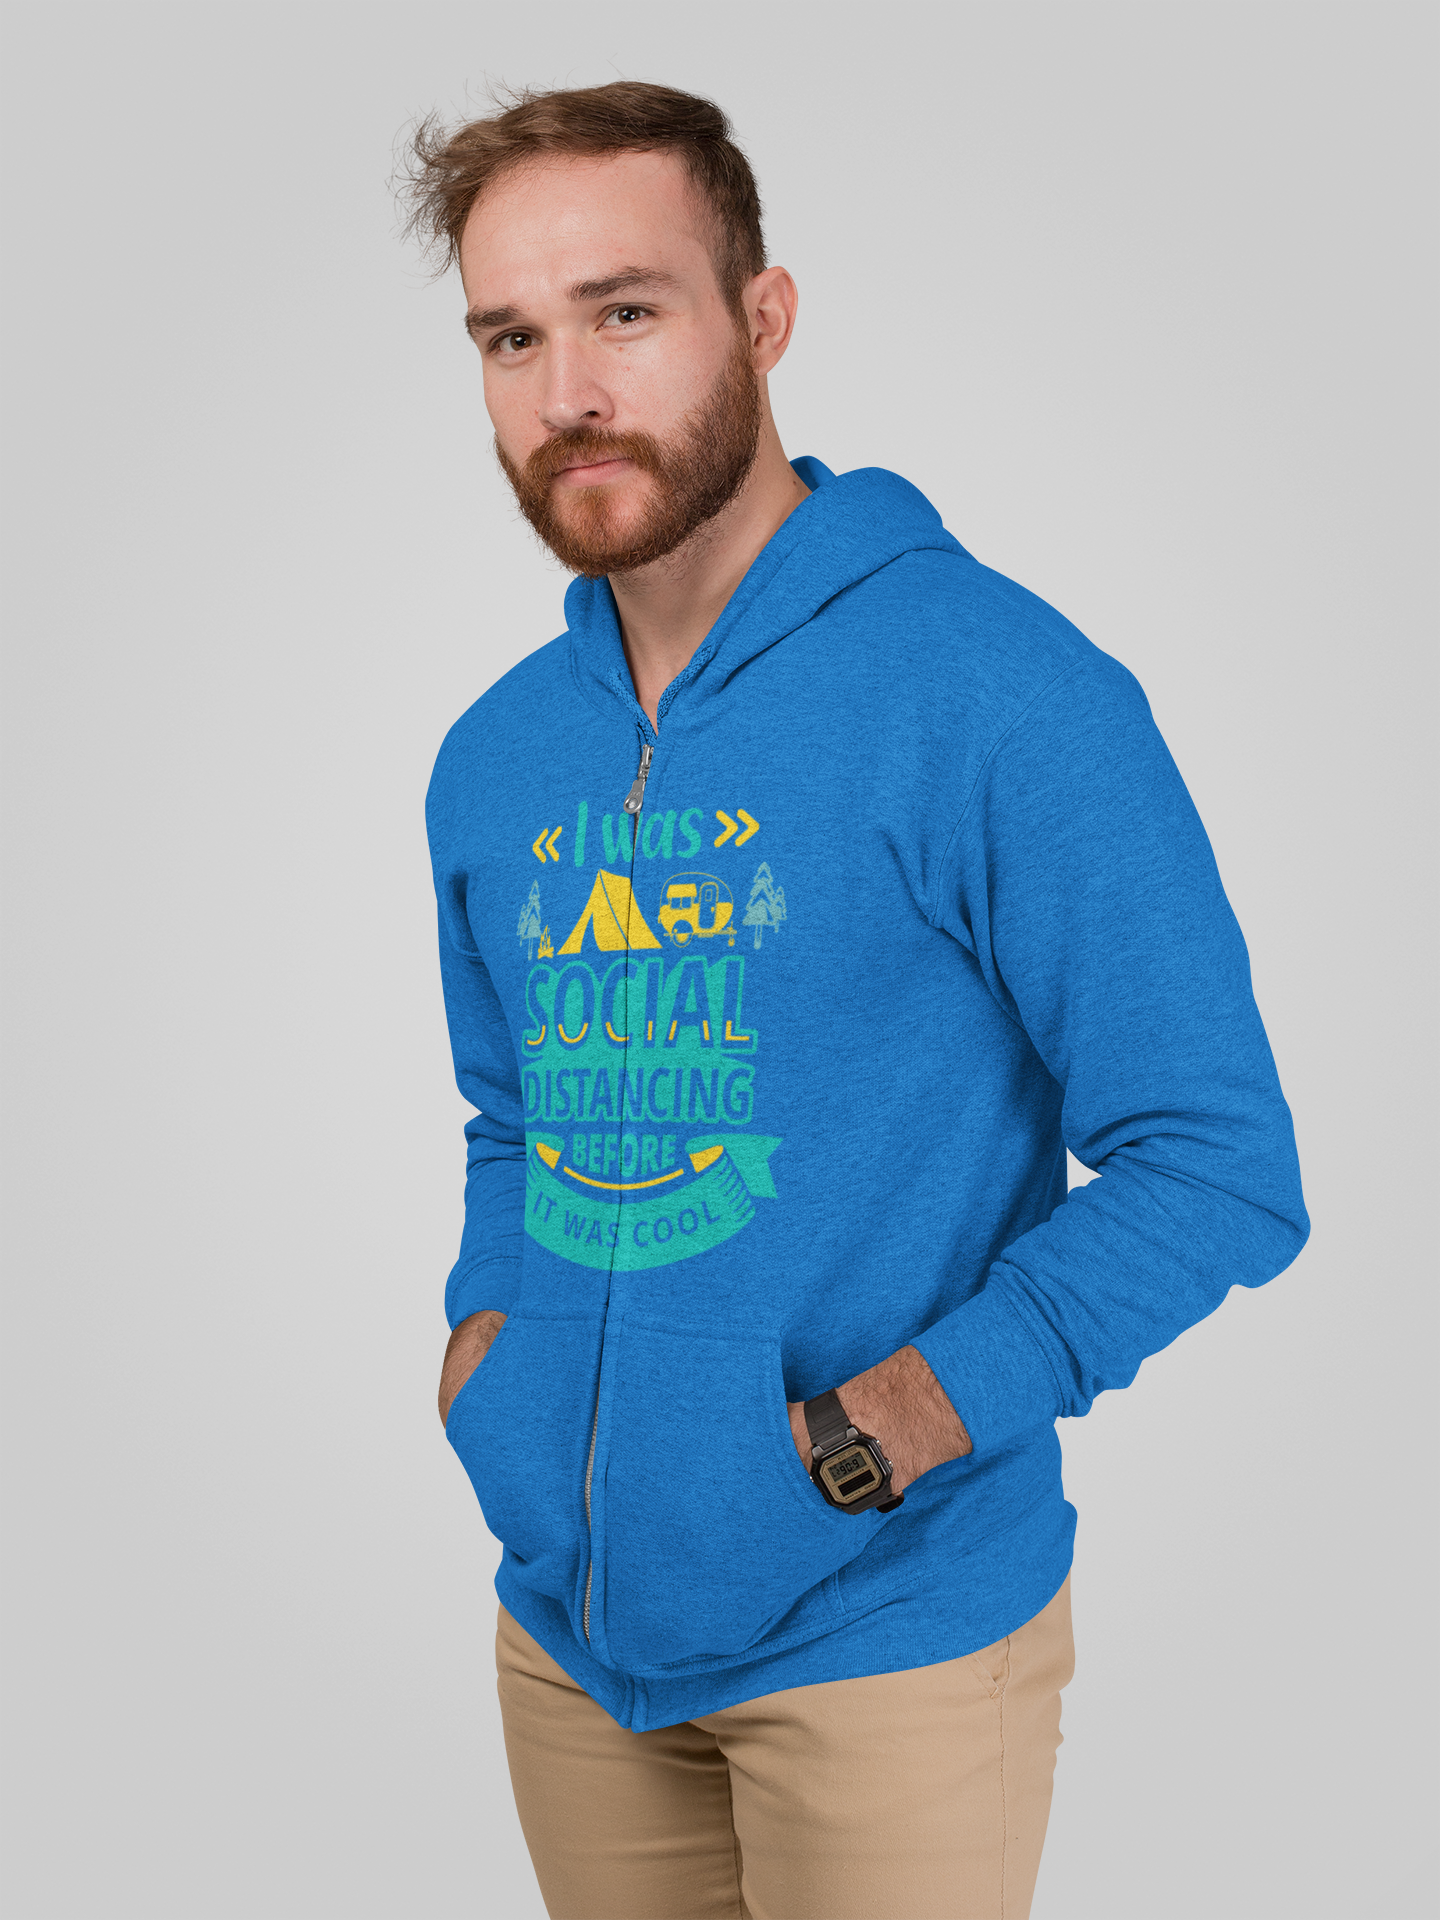 Social Distancing;Full-zip hoodie sweatshirt